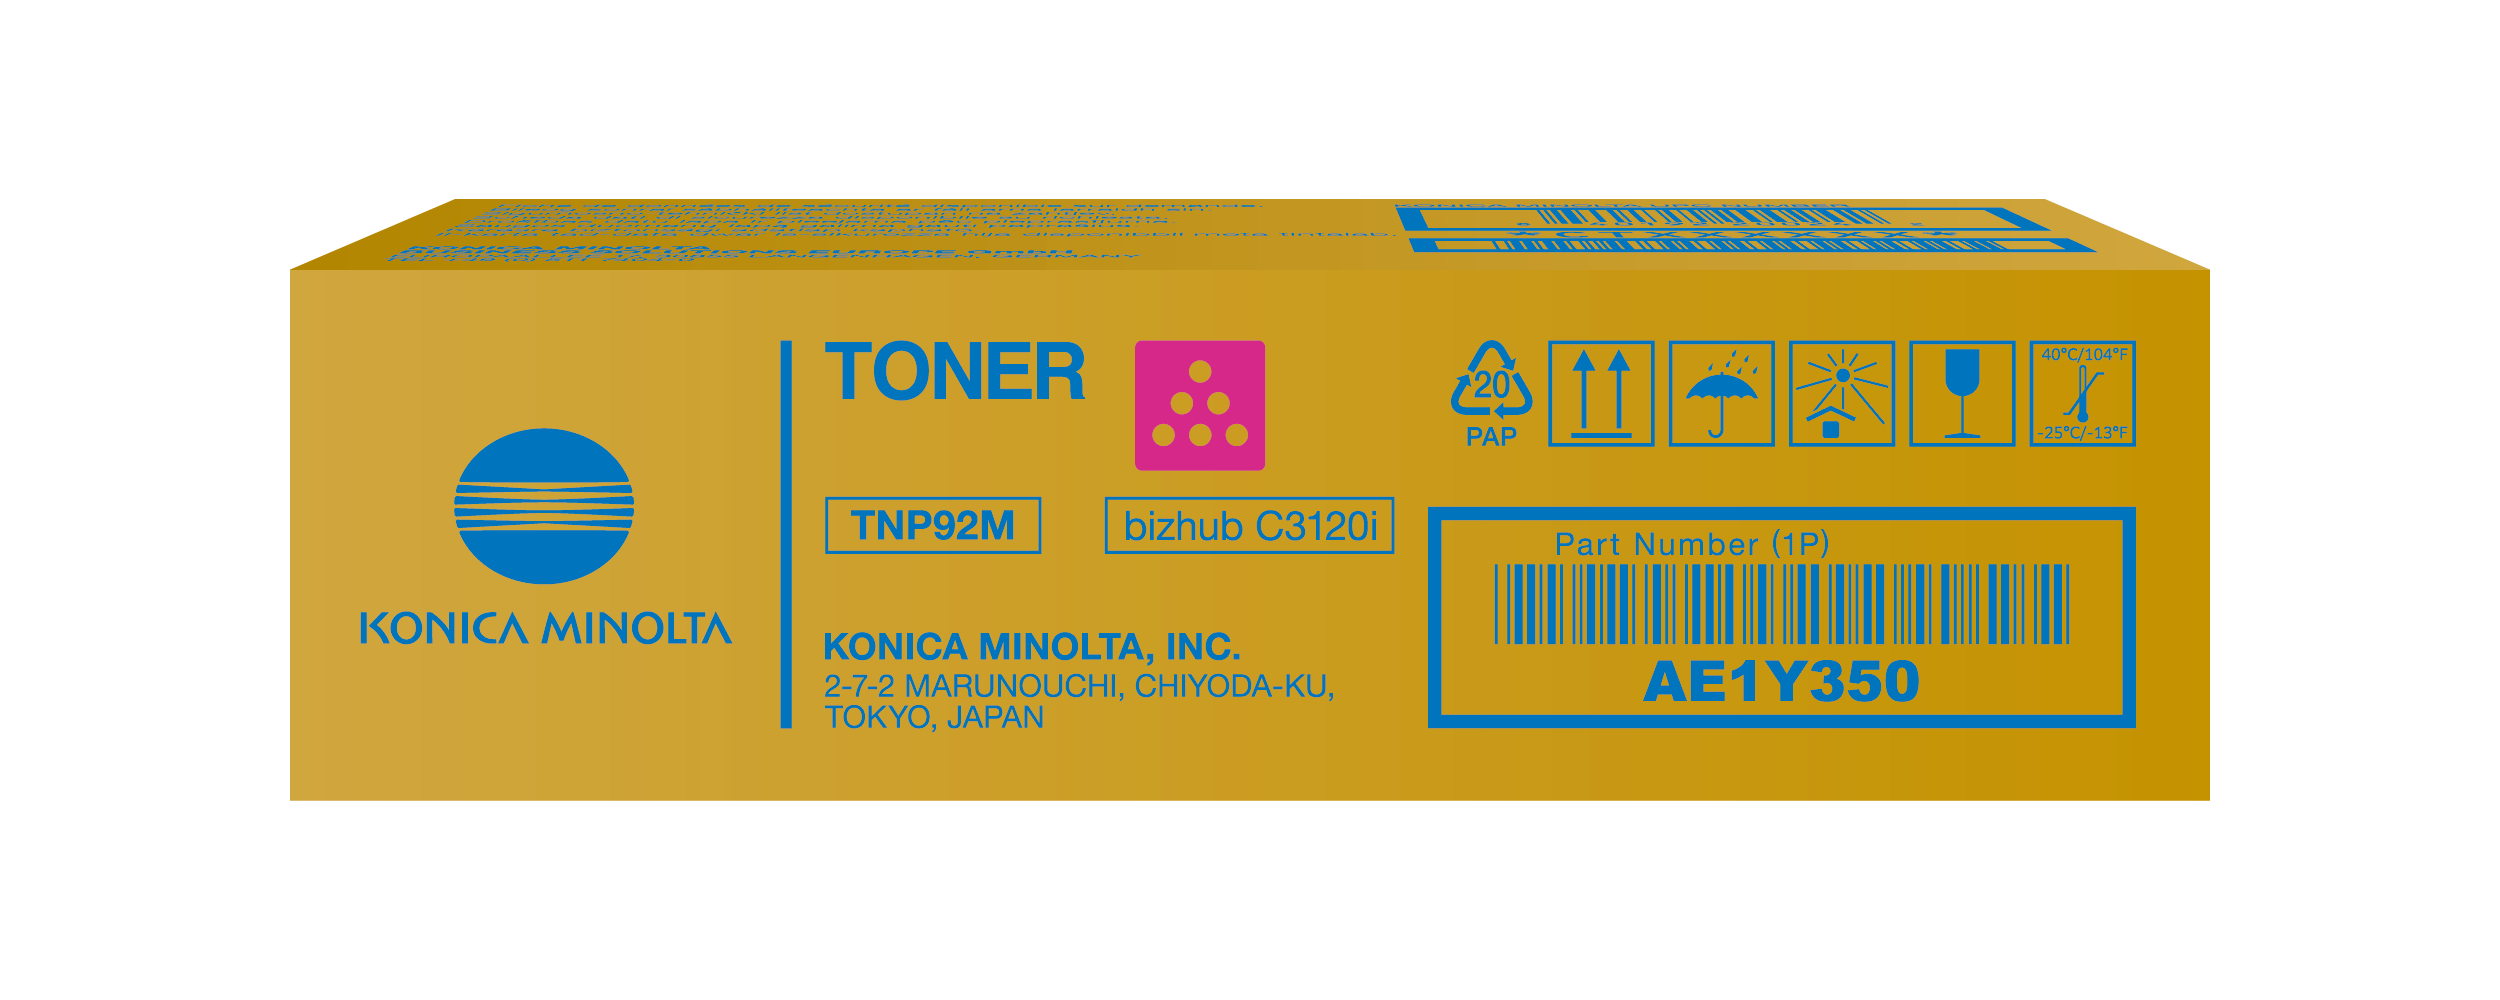 Toner magenta para bizhub C3120i - TNP92M